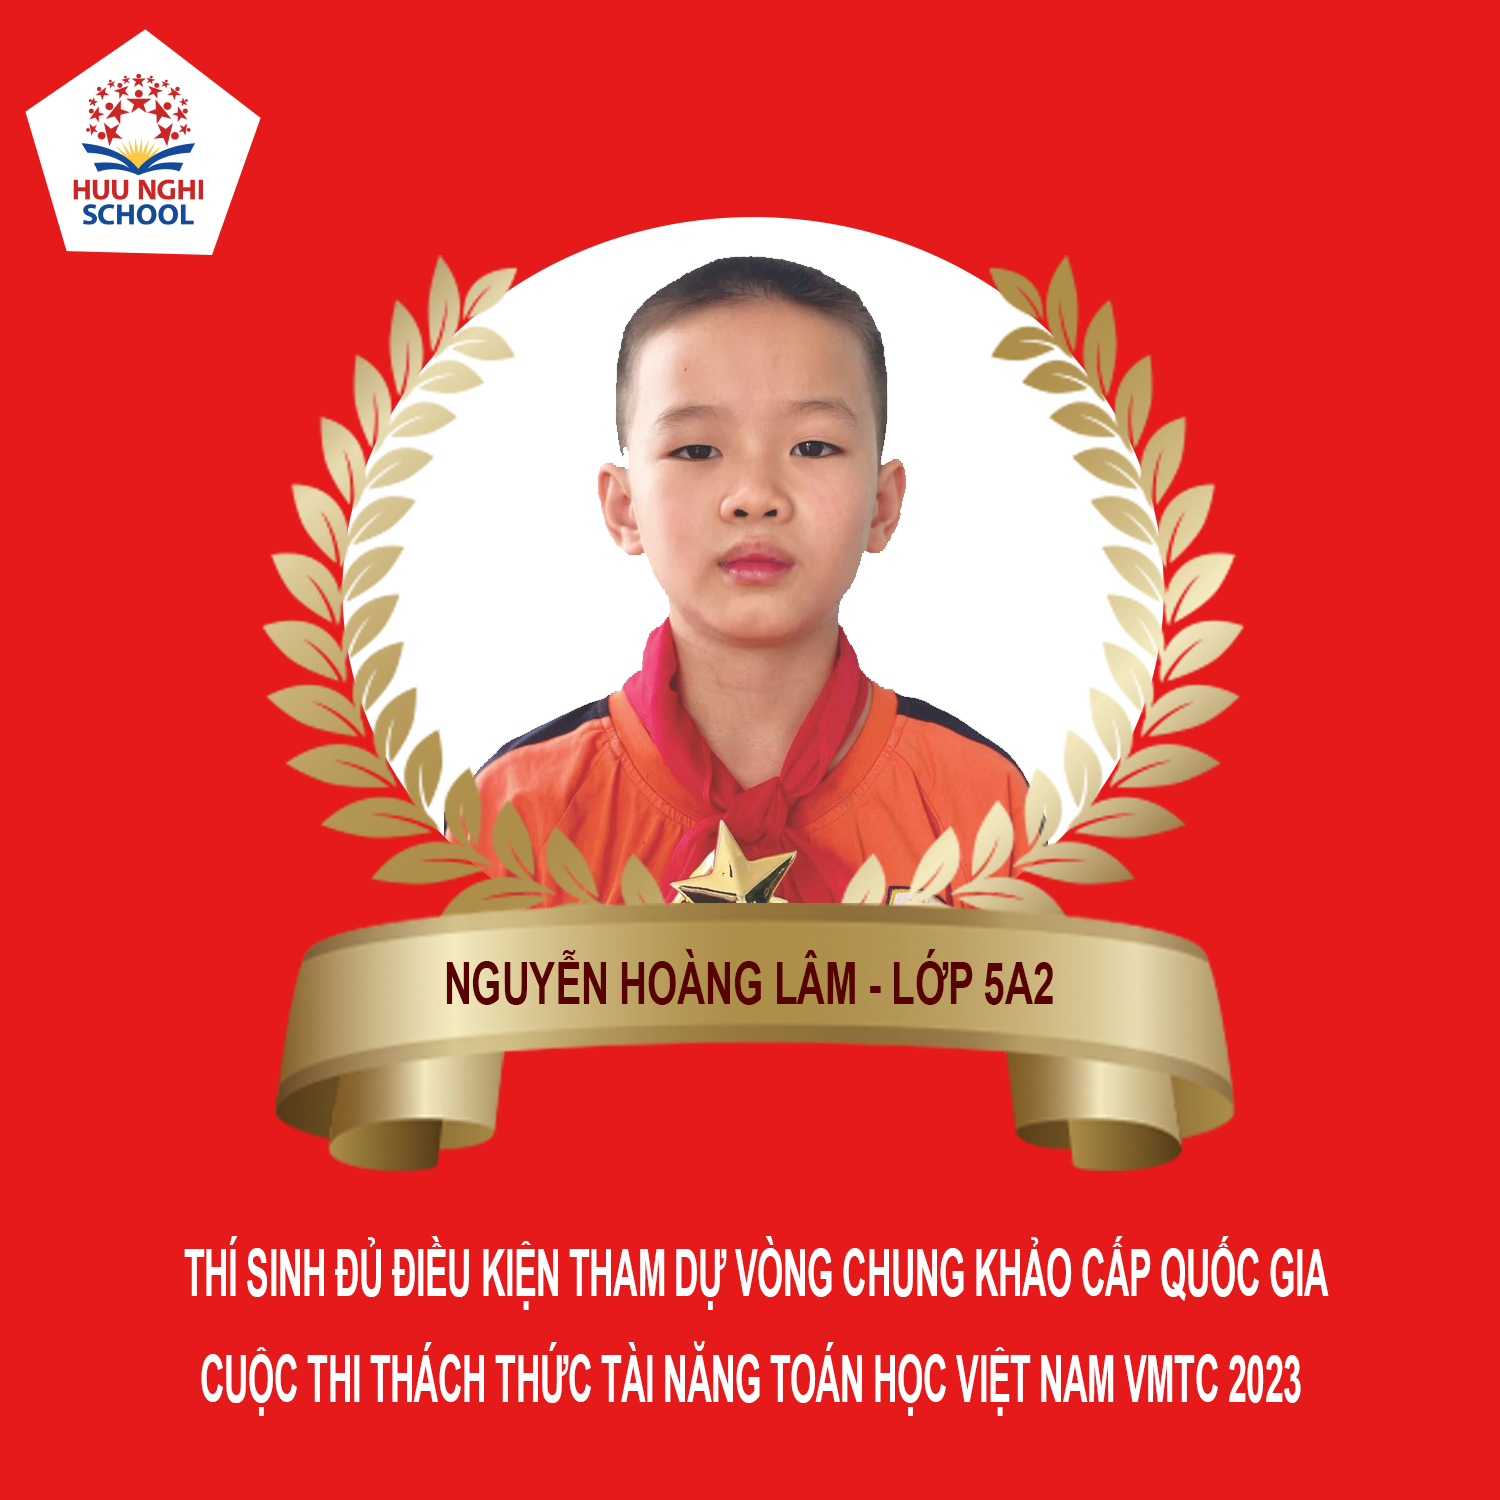 Em Nguyễn Hoàng Lâm tham dự vòng chung khảo cấp quốc gia cuộc thi Thách thức taì năng toán học